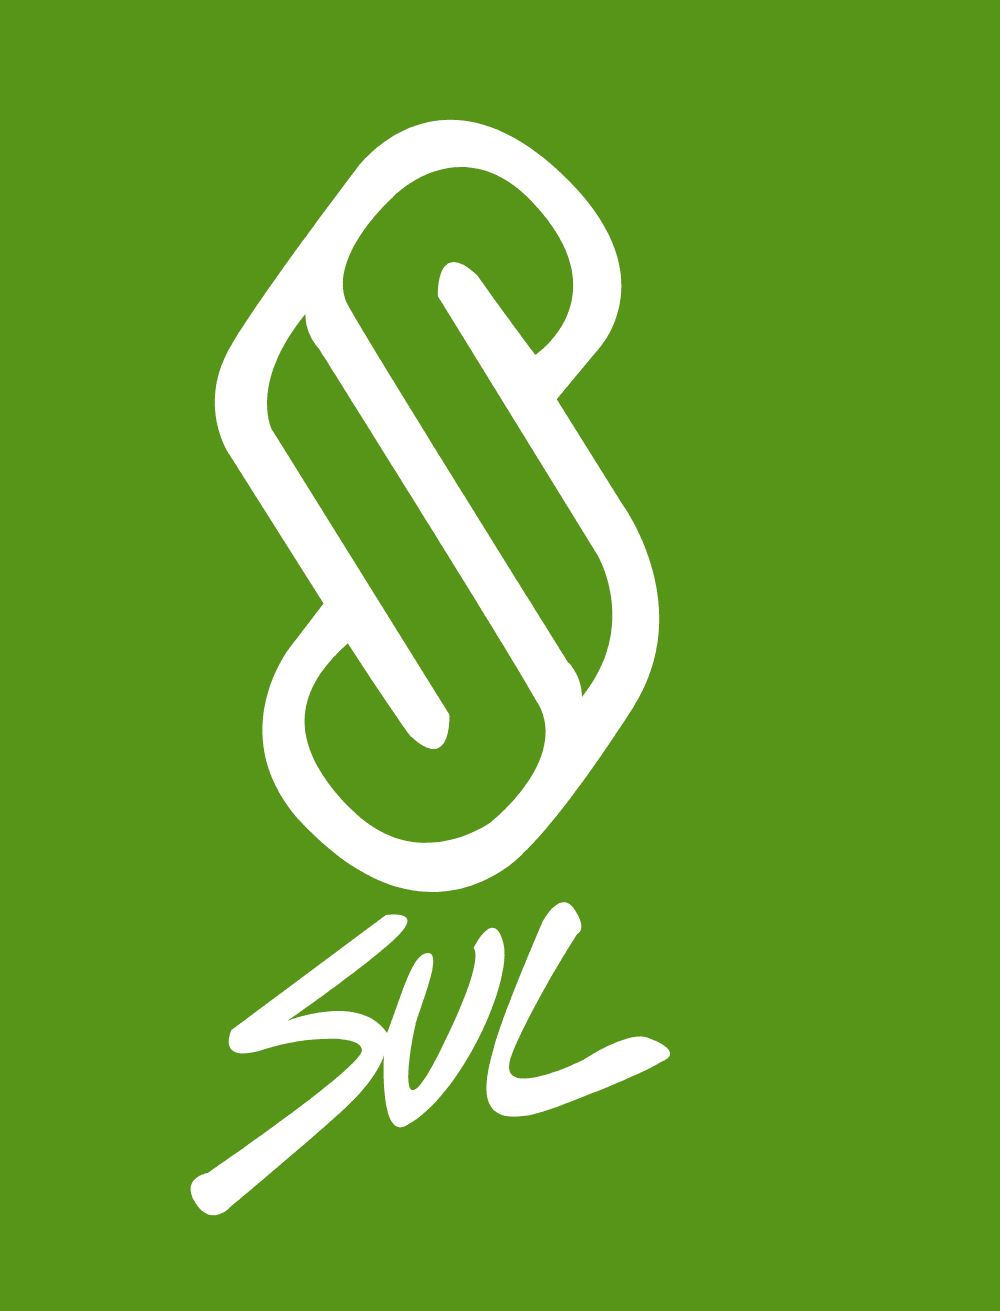 SUL - Secretariado Uruguayo de Lana Logo download